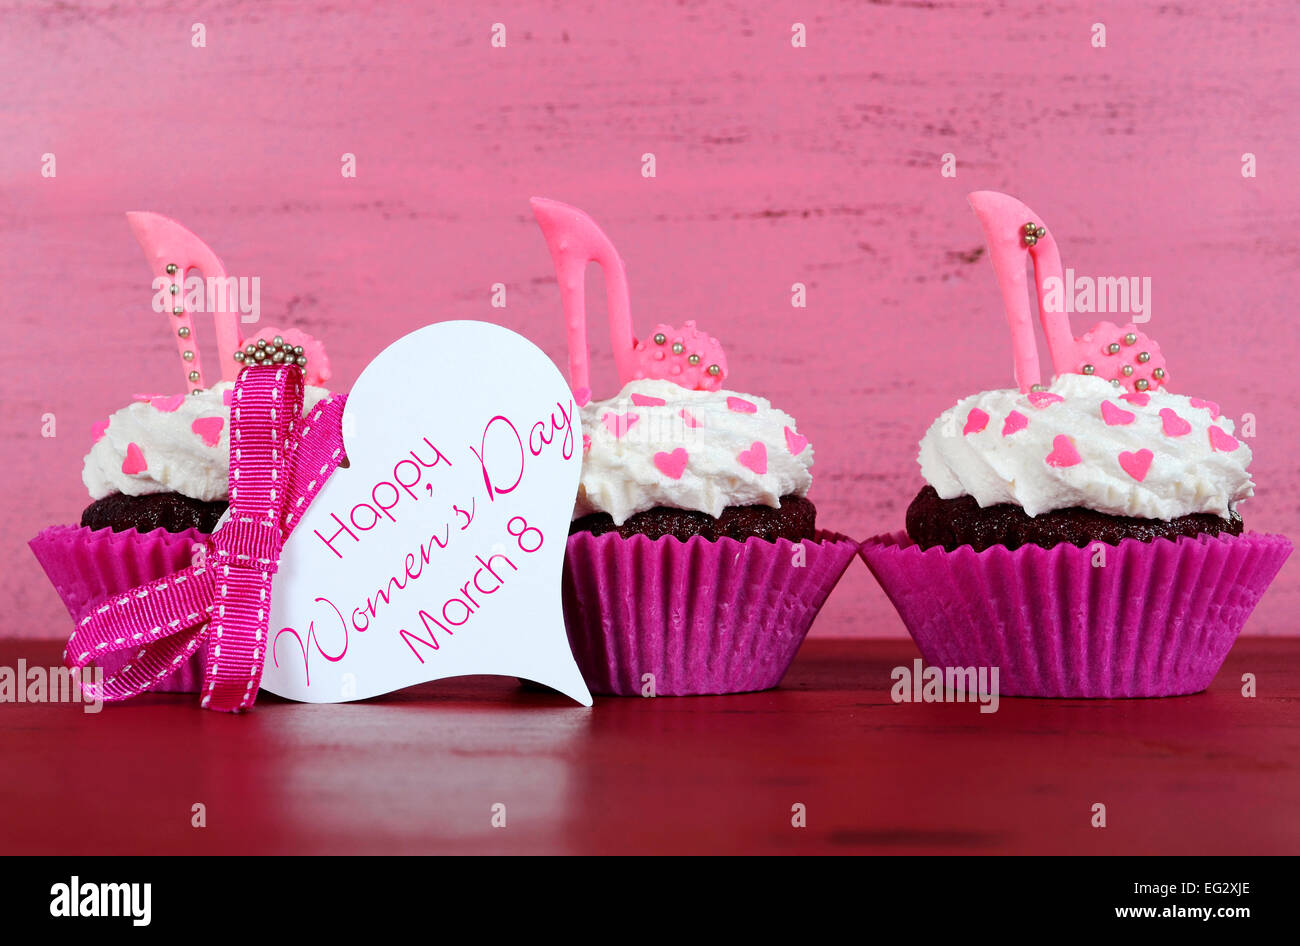 La Journée internationale des femmes, le 8 mars, cupcakes avec talon haut stiletto chaussures fondant sur fond de bois rose vintage Banque D'Images